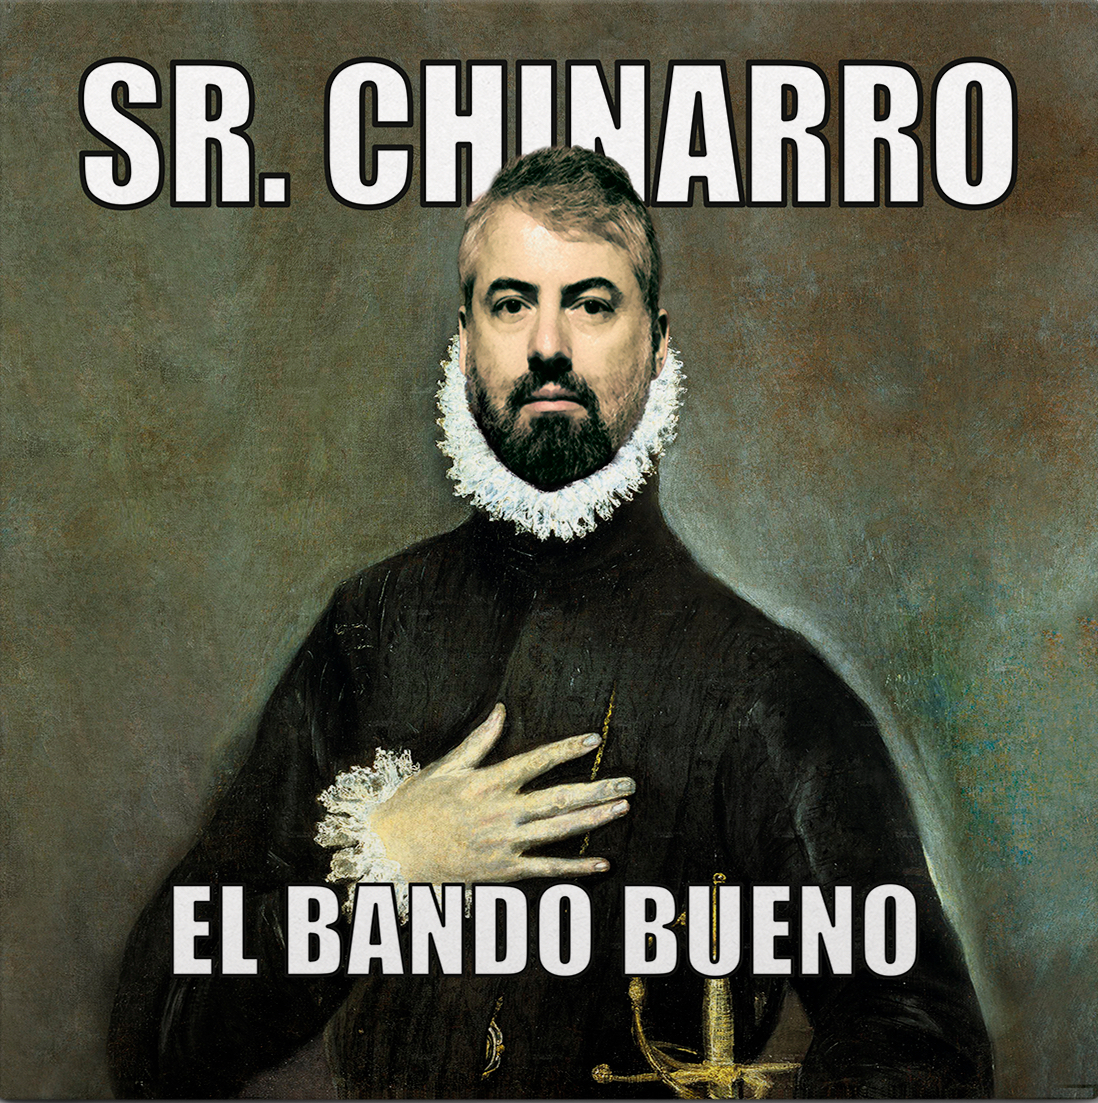 Sr Chinarro "El bando bueno" CD